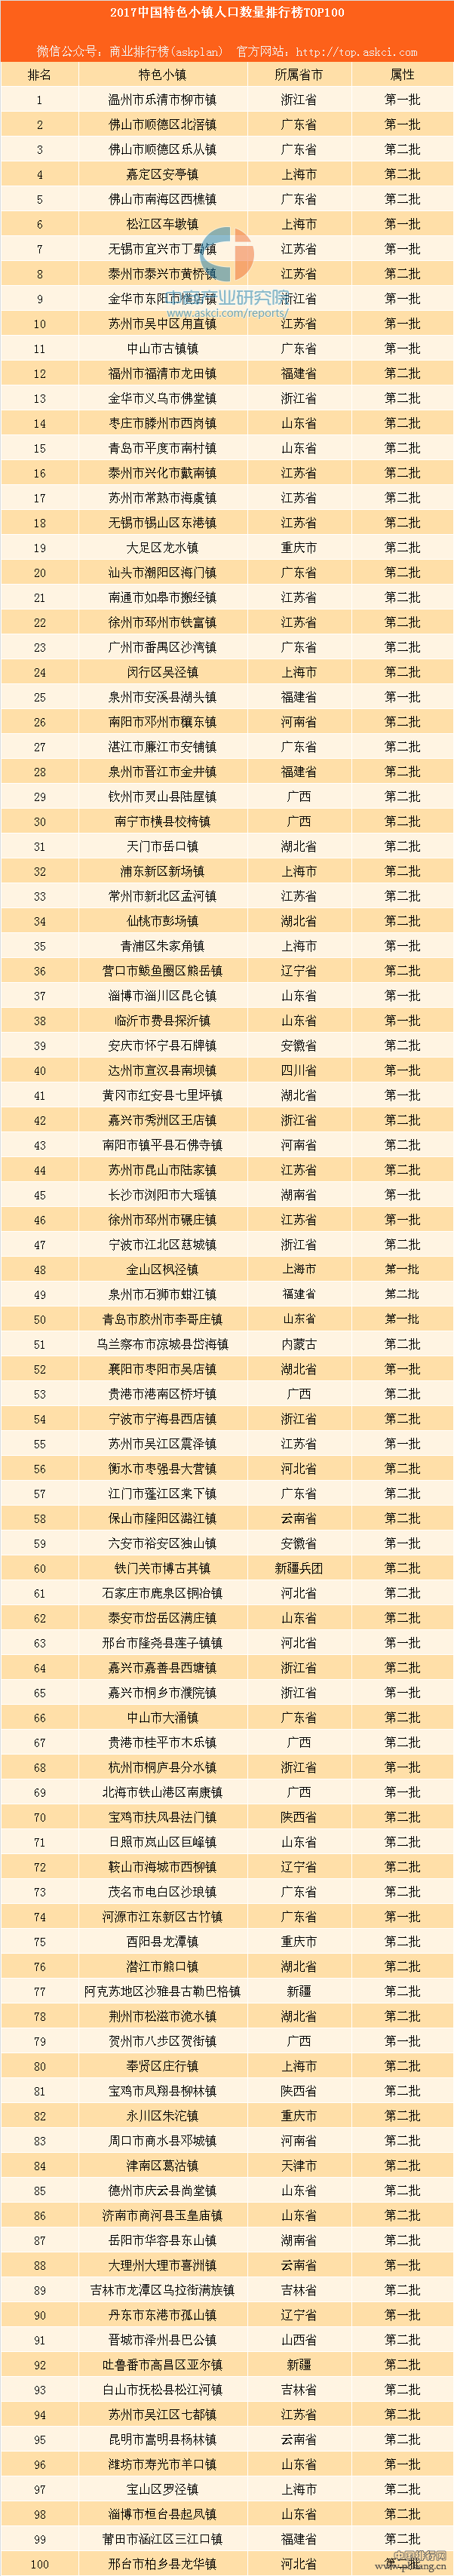 2017中国特色小镇人口数量排行榜TOP100